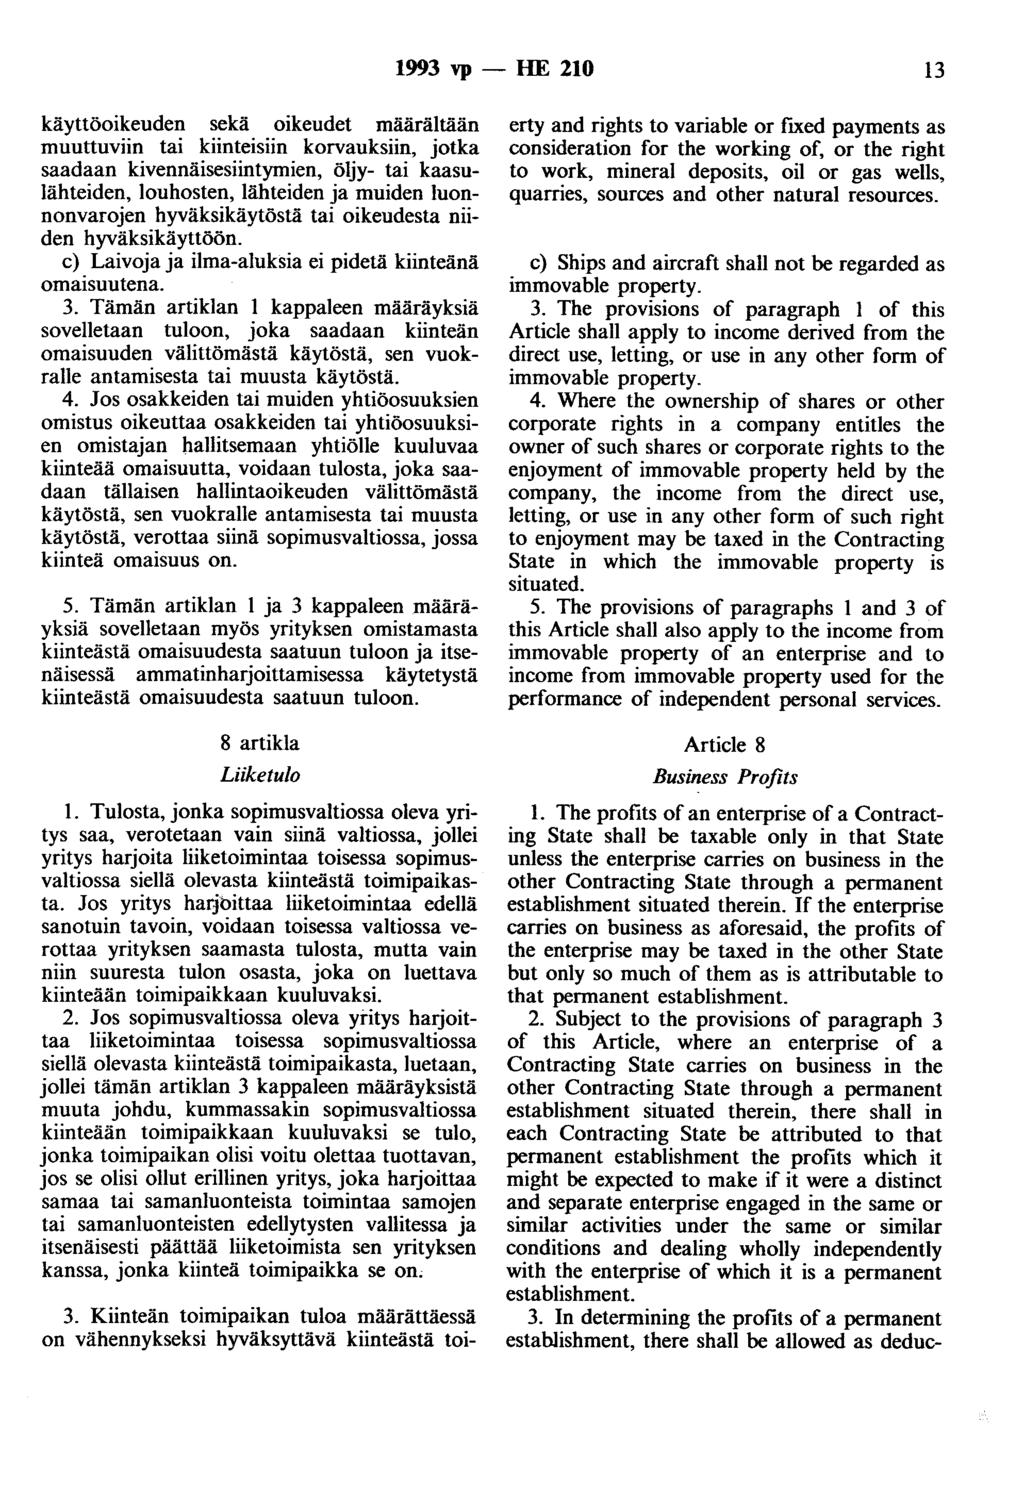 1993 vp - HE 210 13 käyttöoikeuden sekä oikeudet määrältään muuttuviin tai kiinteisiin korvauksiin, jotka saadaan kivennäisesiintymien, öljy- tai kaasulähteiden, louhosten, lähteiden ja muiden